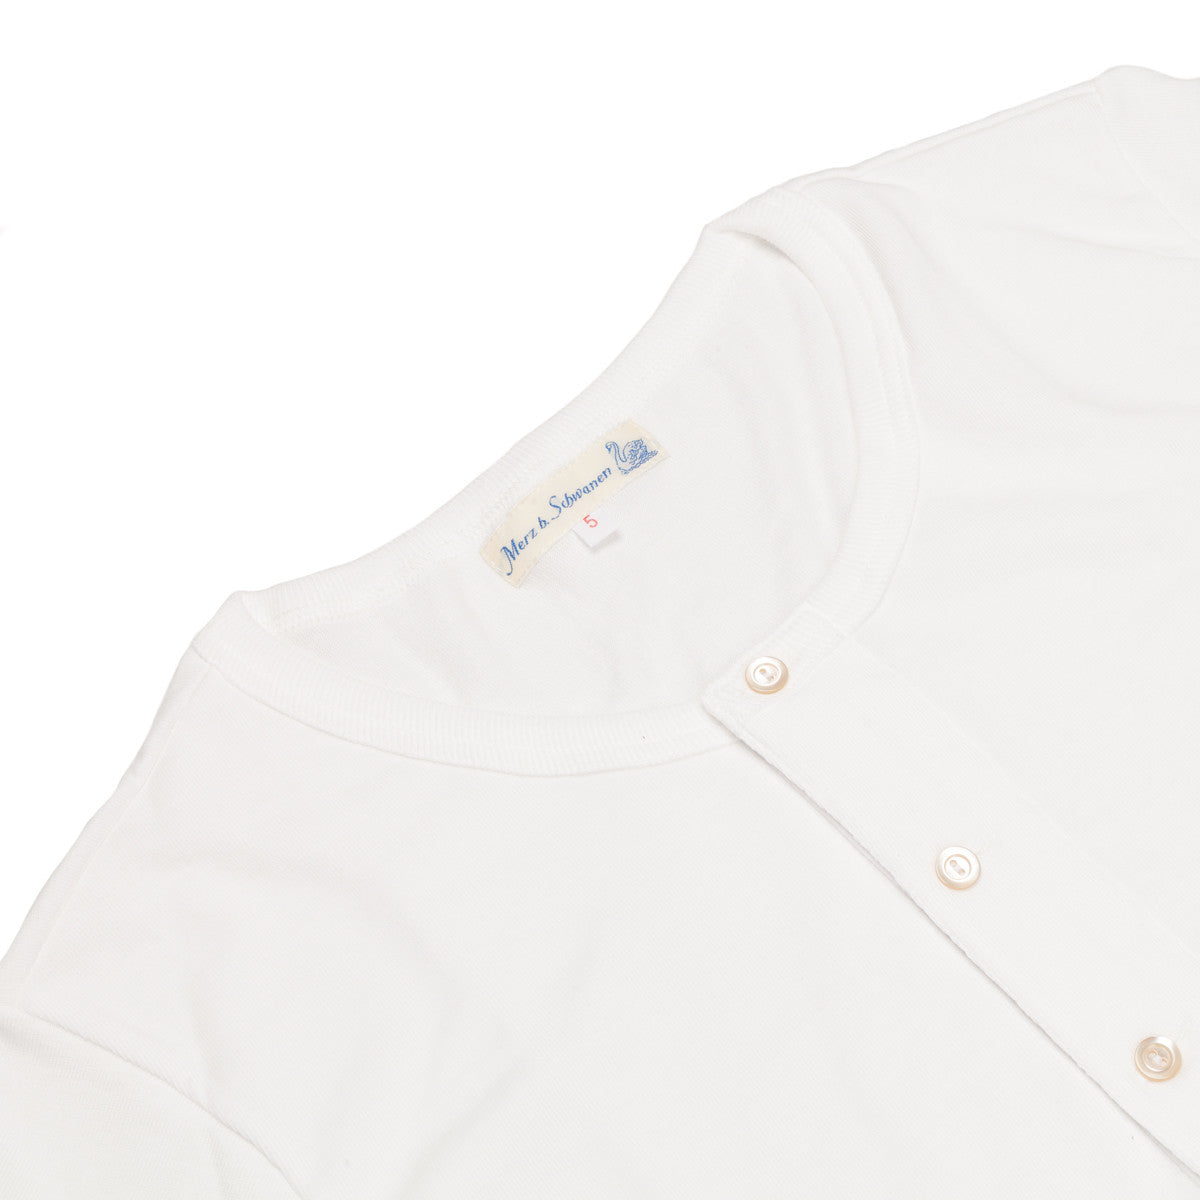 Merz B Schwanen 204 2 thread button facing shirt short sleeve white